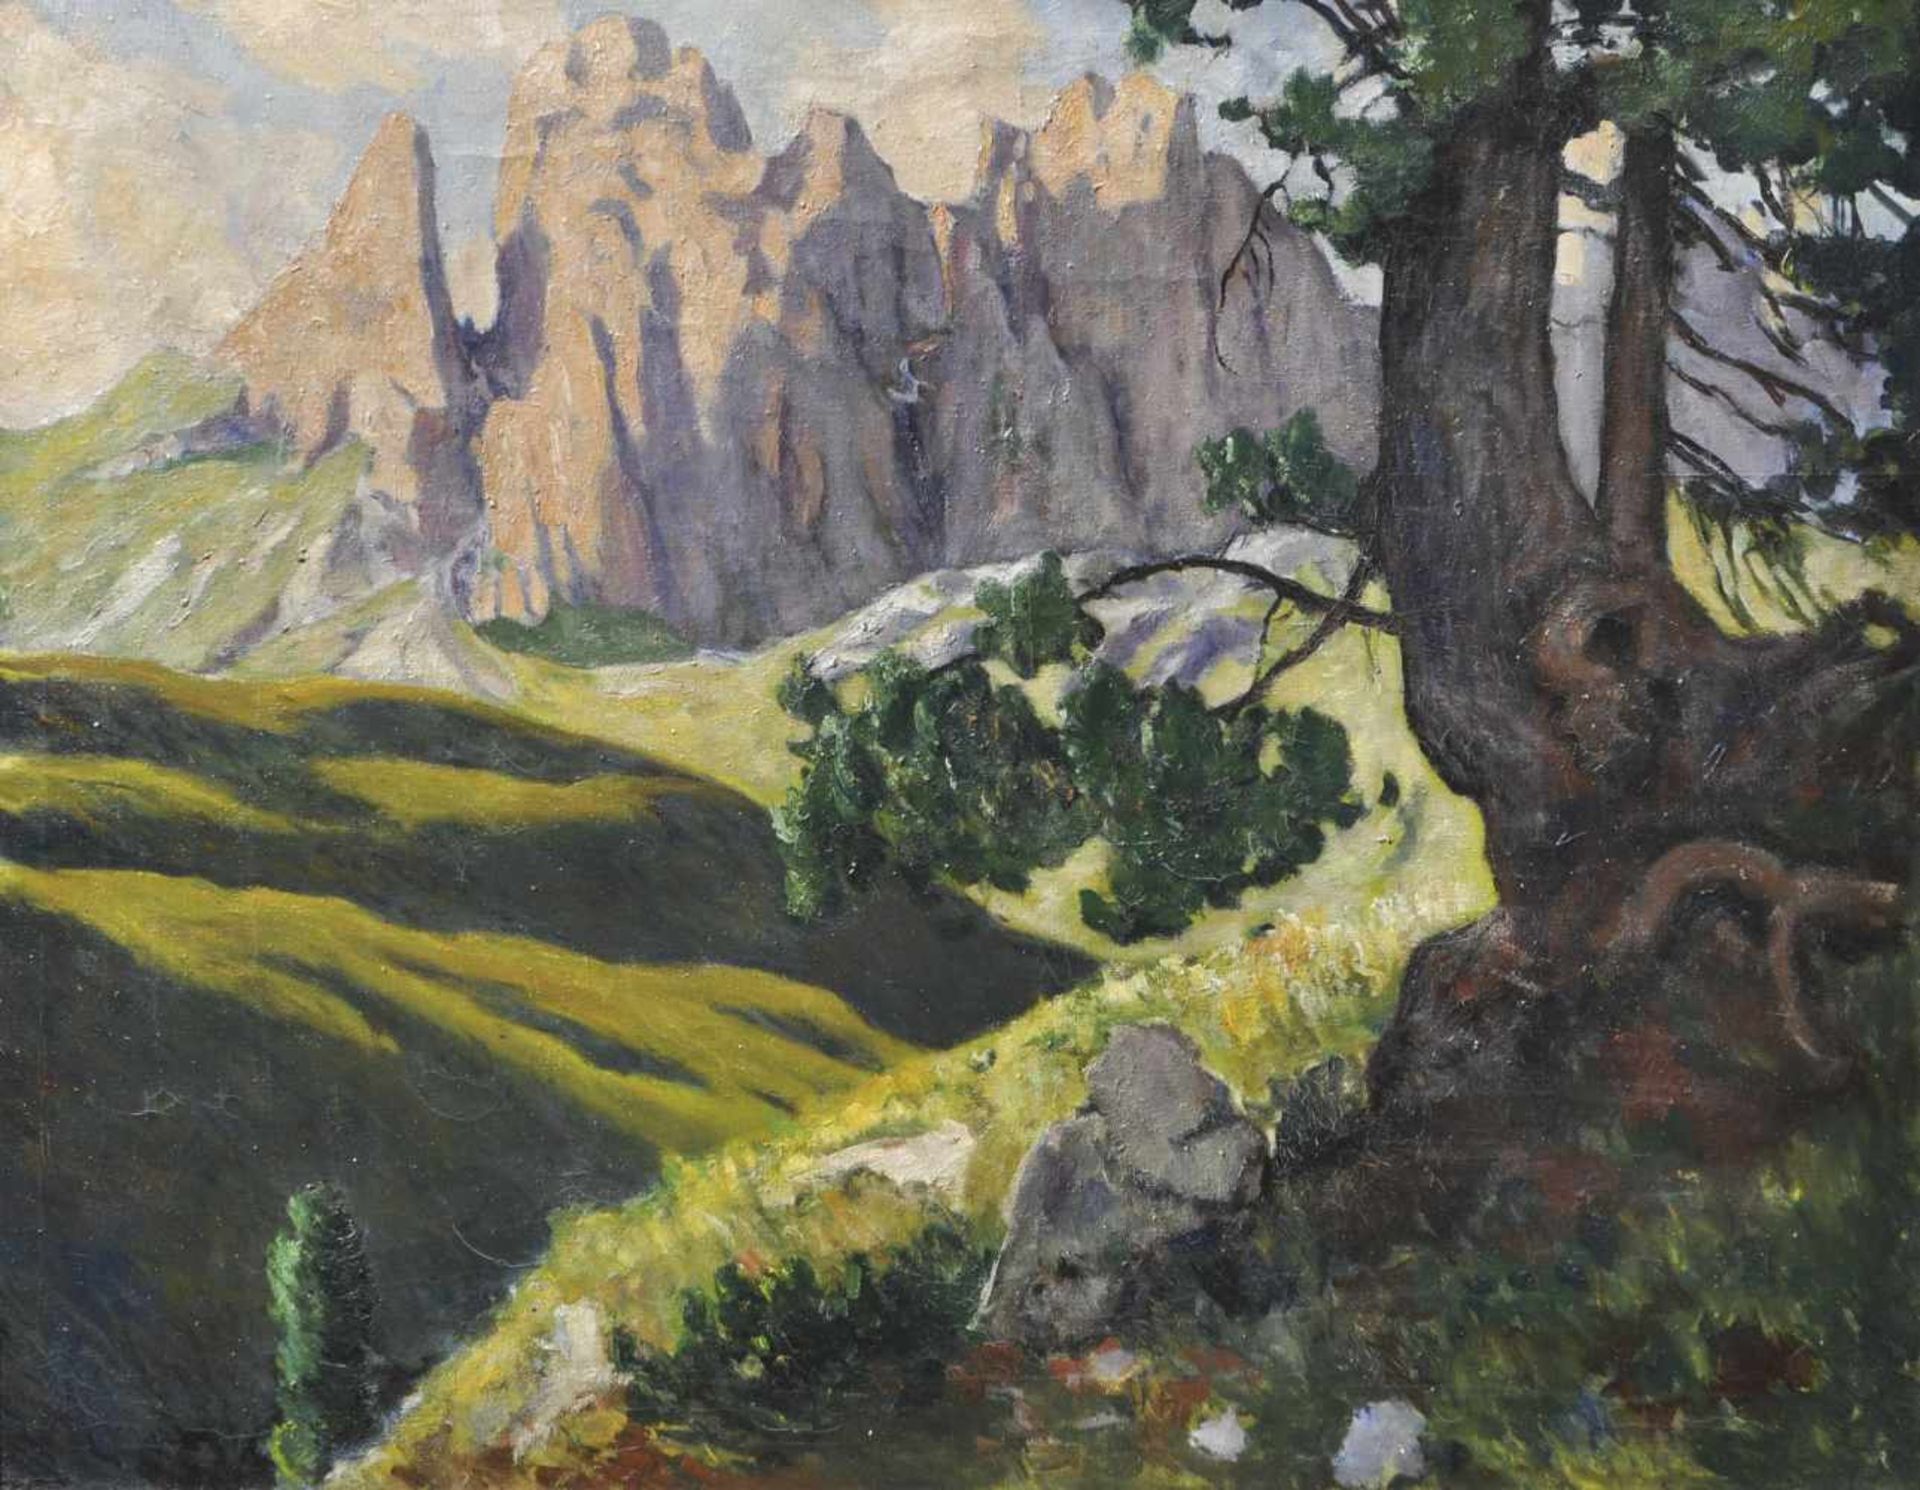 Max Sparer (Söll, Tramin/Termeno 1886  Bozen/Bolzano 1968)Dolomitenlandschaft;Öl auf Leinwand, 88,5